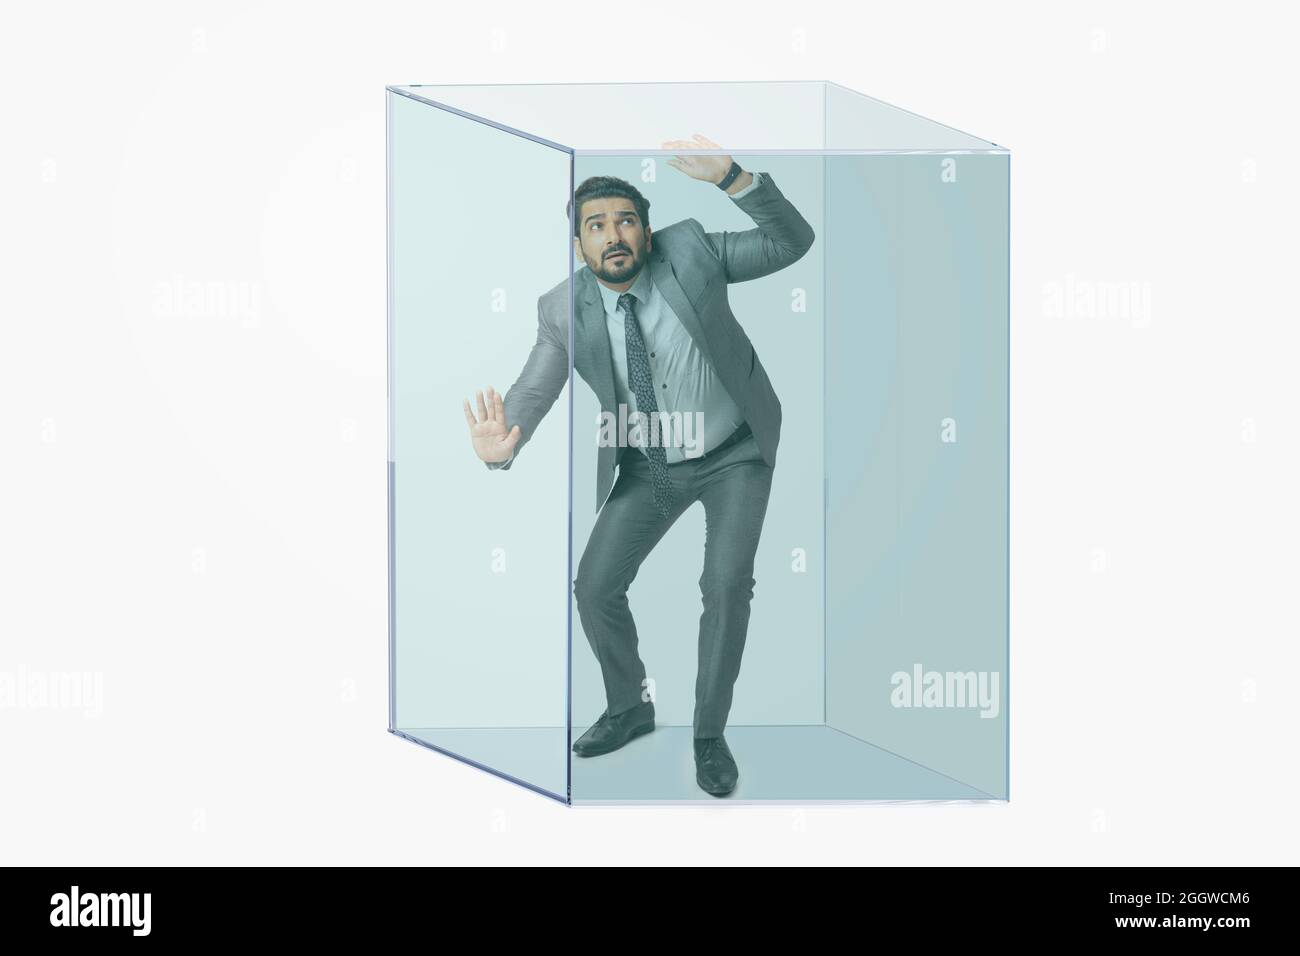 Porträt eines Mannes in formellem Business-Anzug in einem transparenten Würfel gefangen. Stockfoto